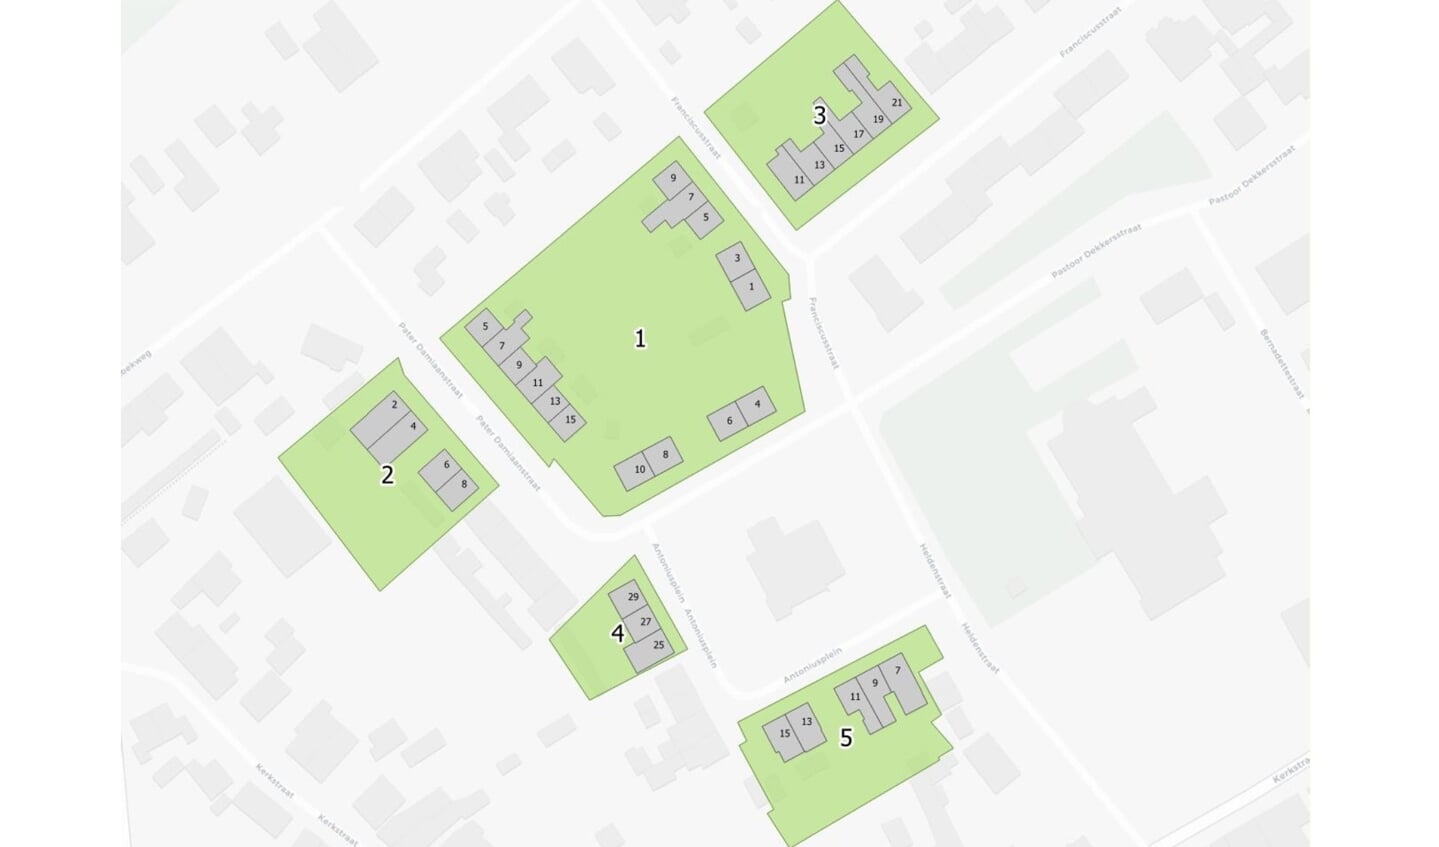 Plannen van Stadlander in Lepelstraat.